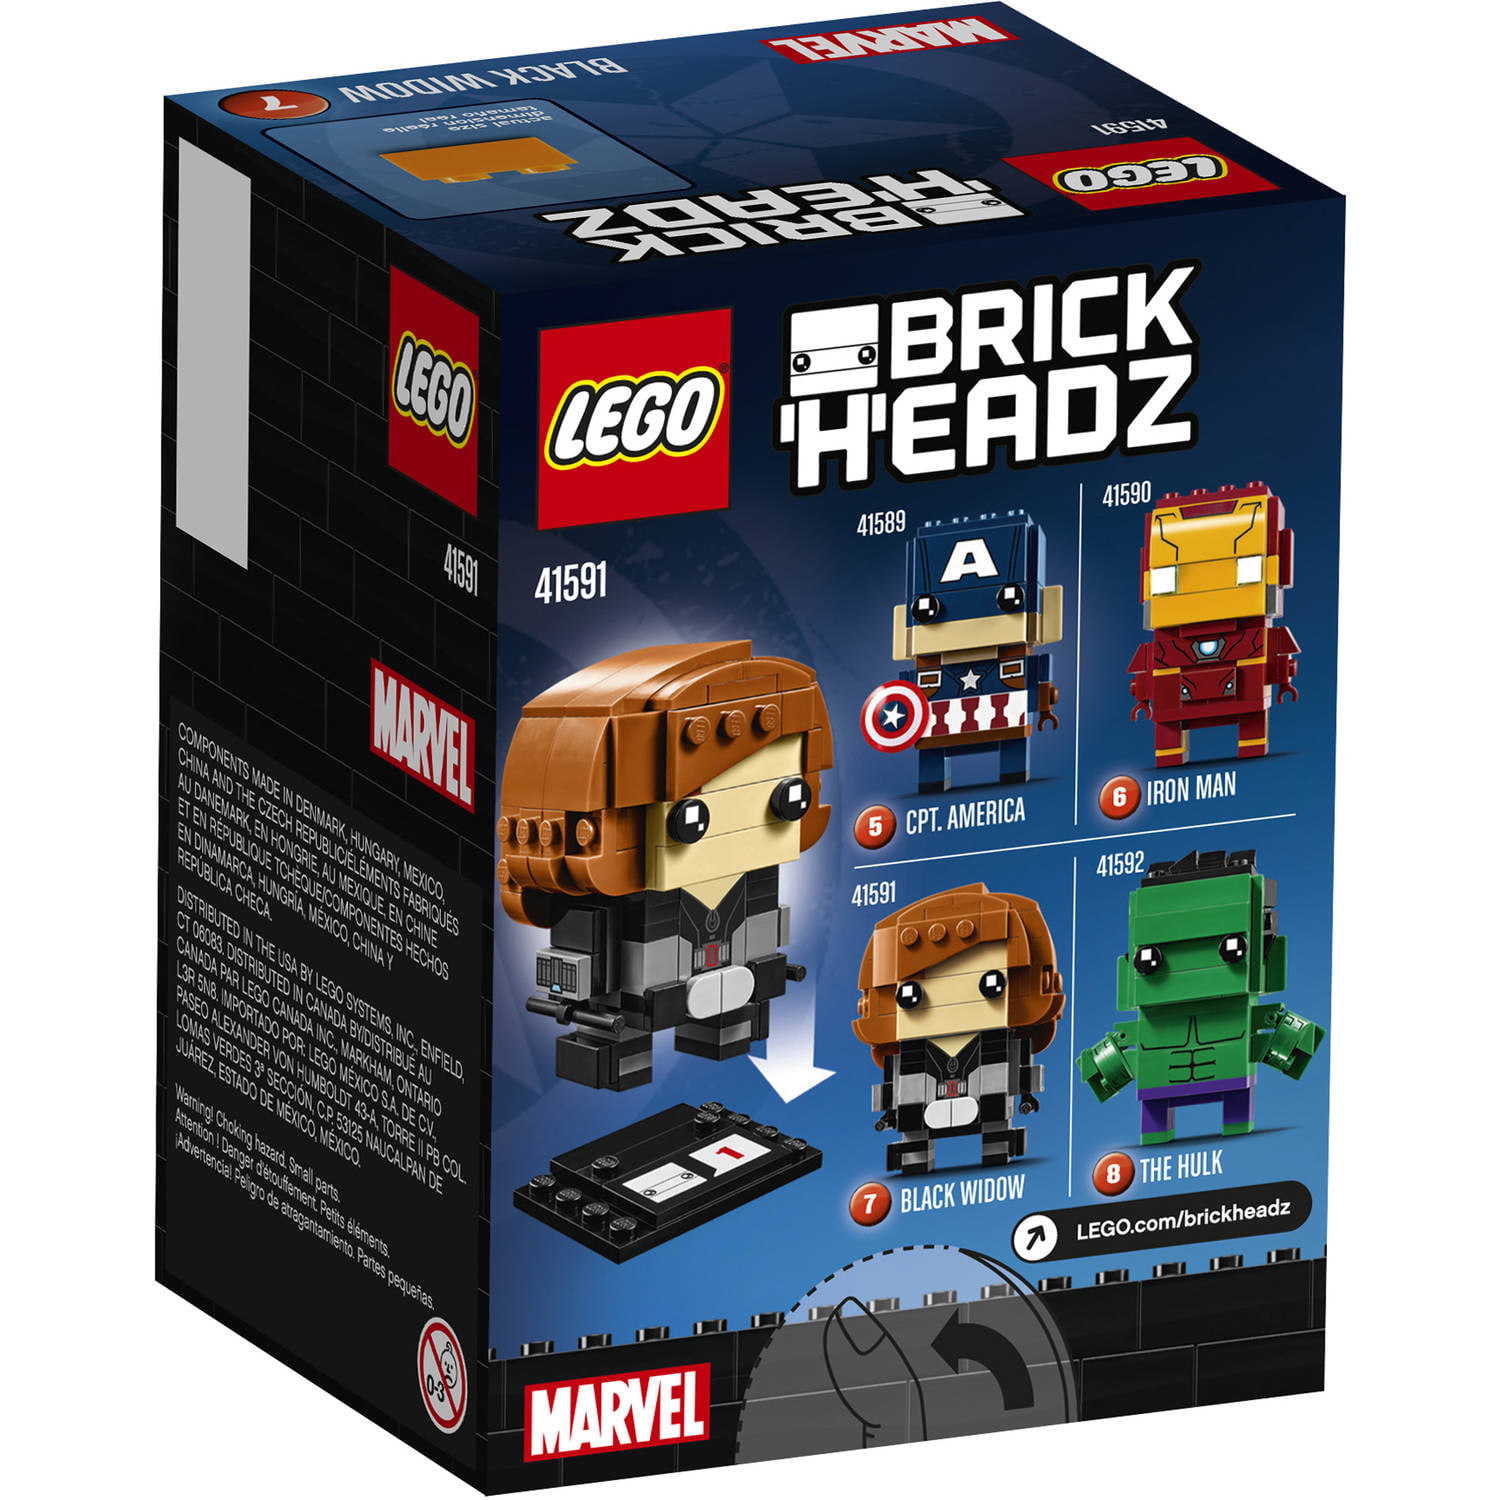 for sale online 41591 LEGO BrickHeadz Black Widow 2017